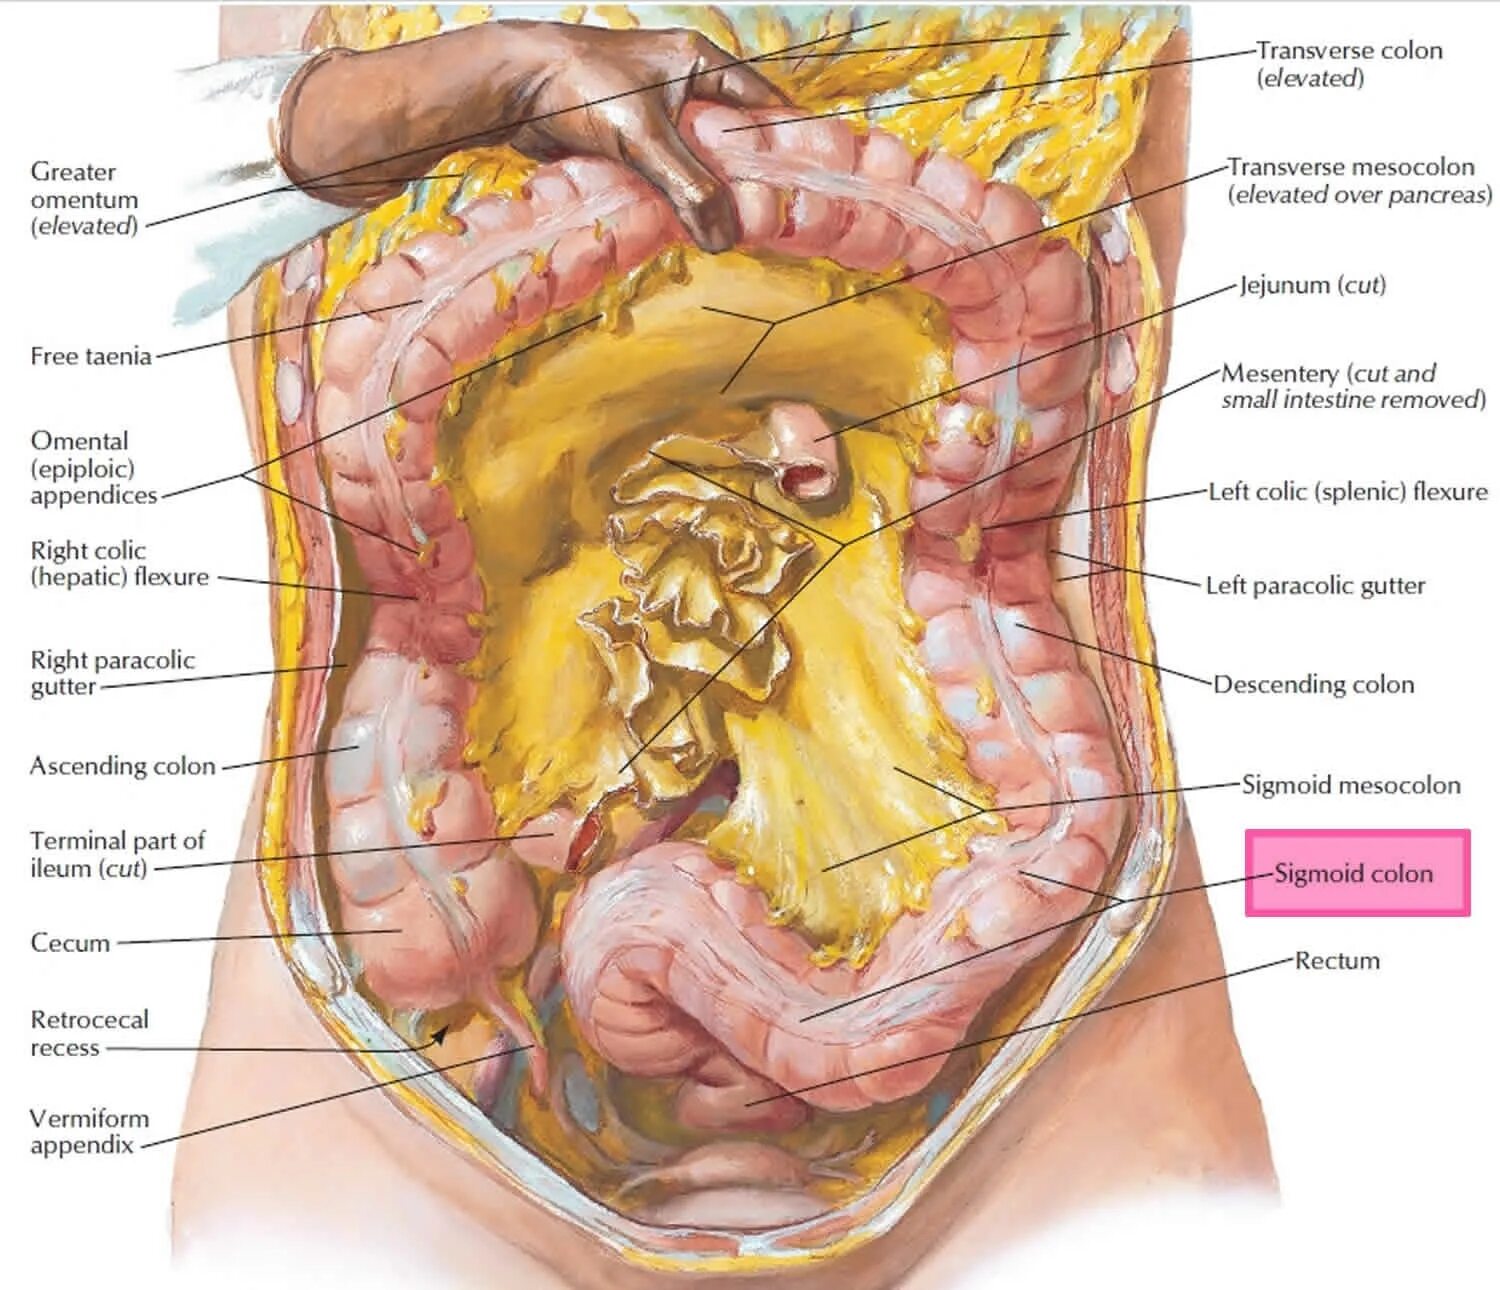 Яичники и аппендикс где находятся у женщины. Анатомия органов брюшной полости.